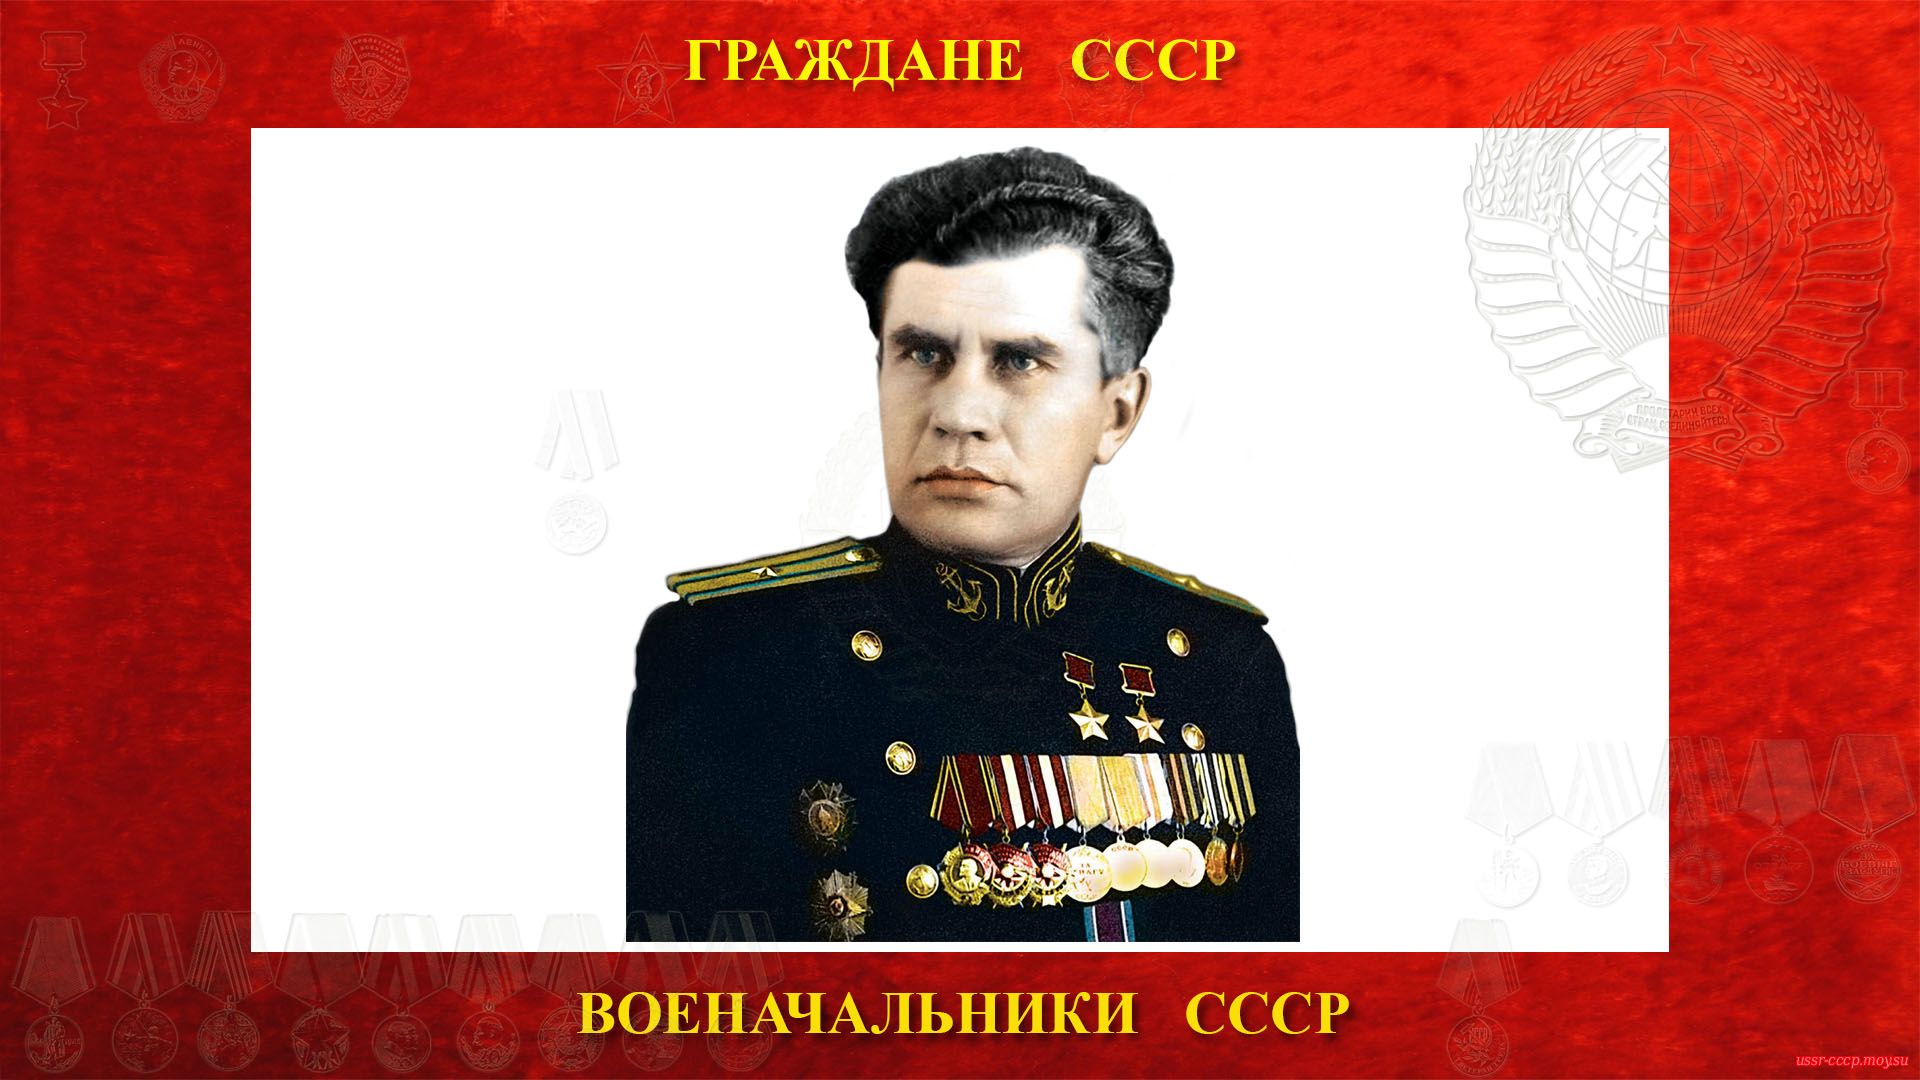 Леонов Виктор Николаевич — Капитан 3-го ранга СССР